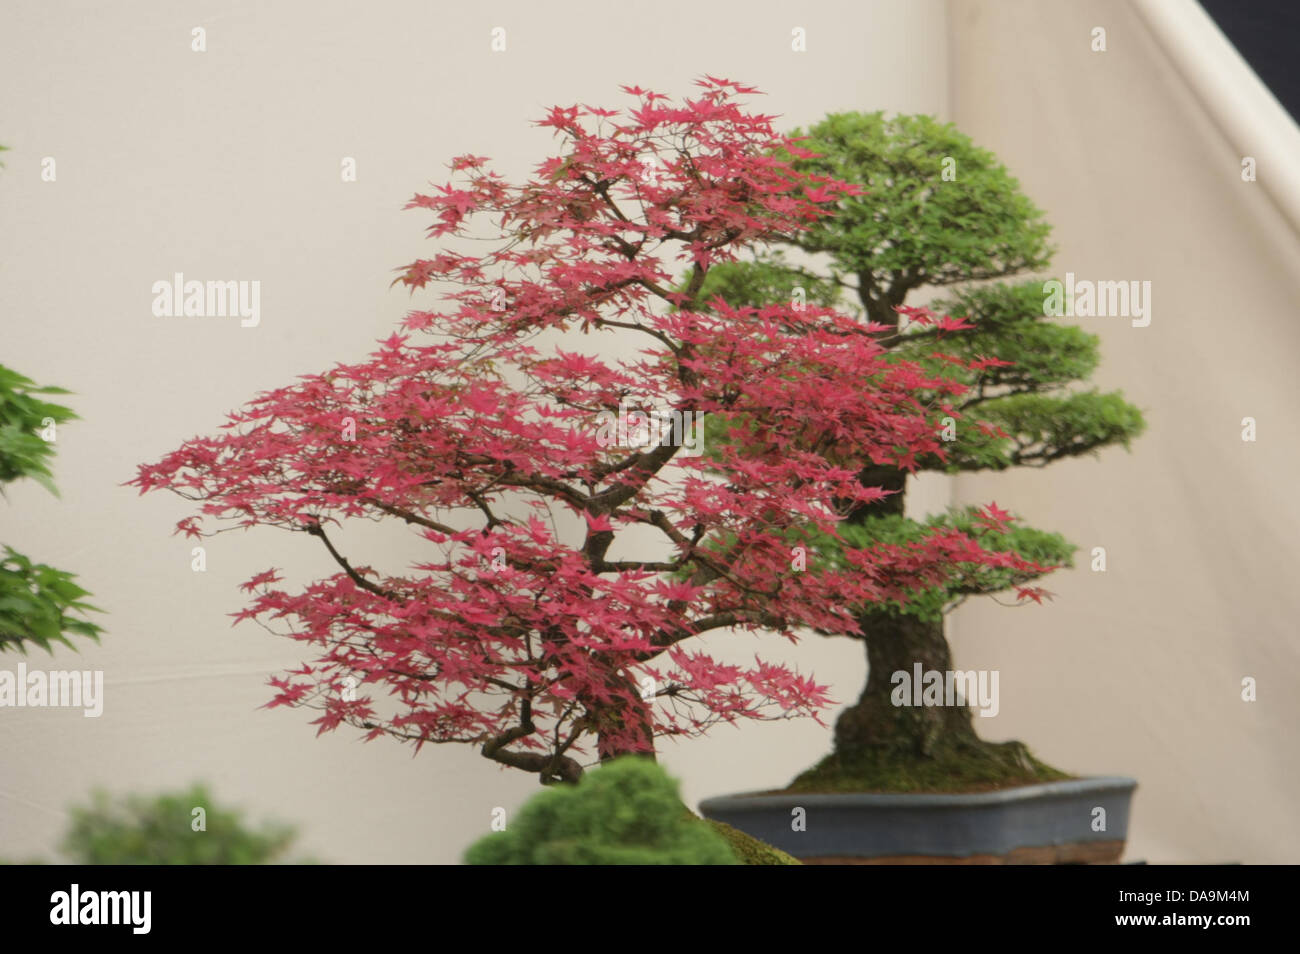 London, UK. 8. Juli 2013. Bonsai Bäume der floralen Festzelt bei RHS Hampton Court Palace Flower Show. Bildnachweis: Martyn Wheatley/Alamy Live News Stockfoto